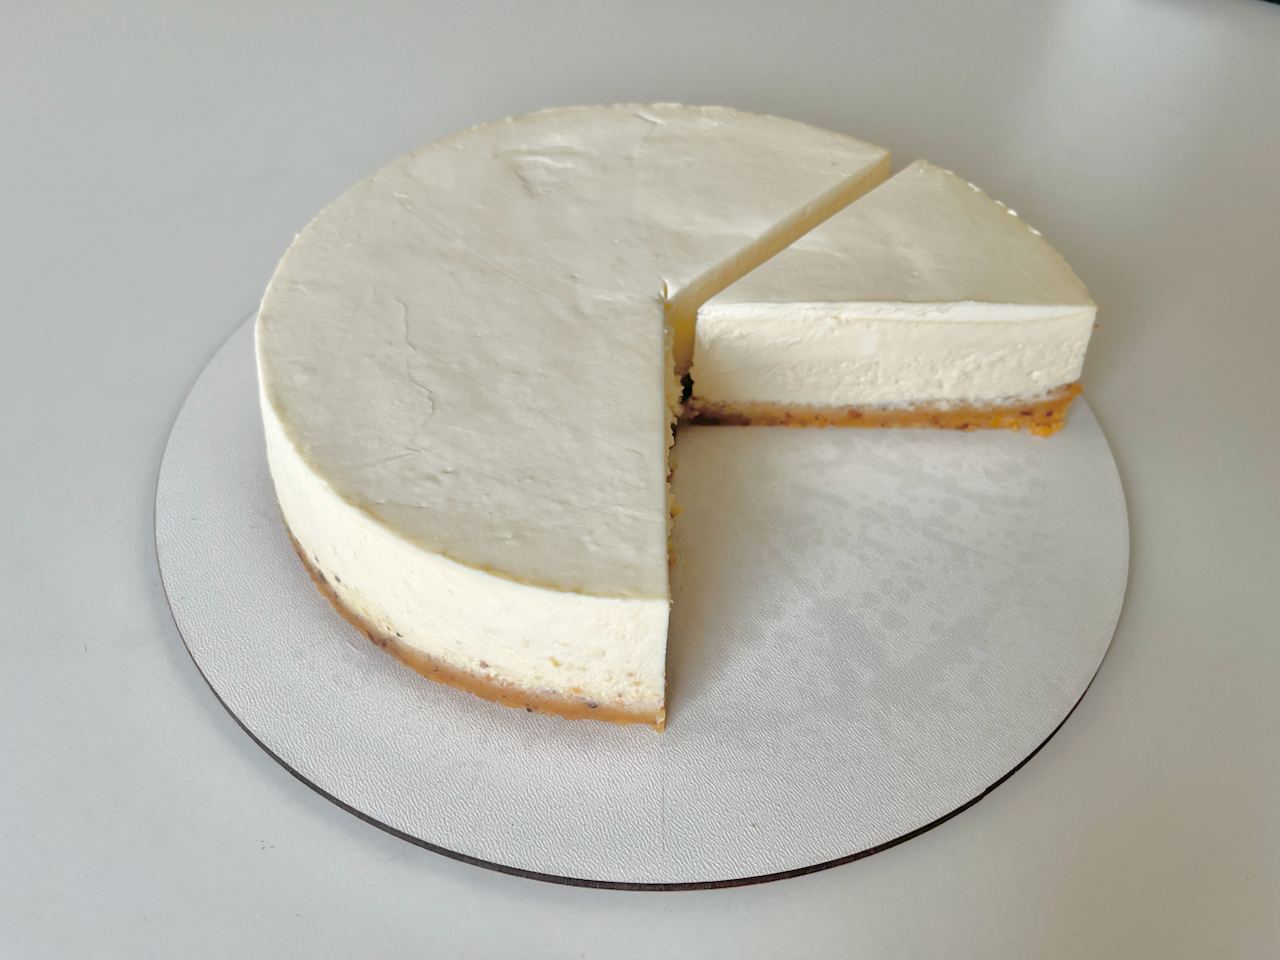 Keto cheesecake, sugarless and gluten-free